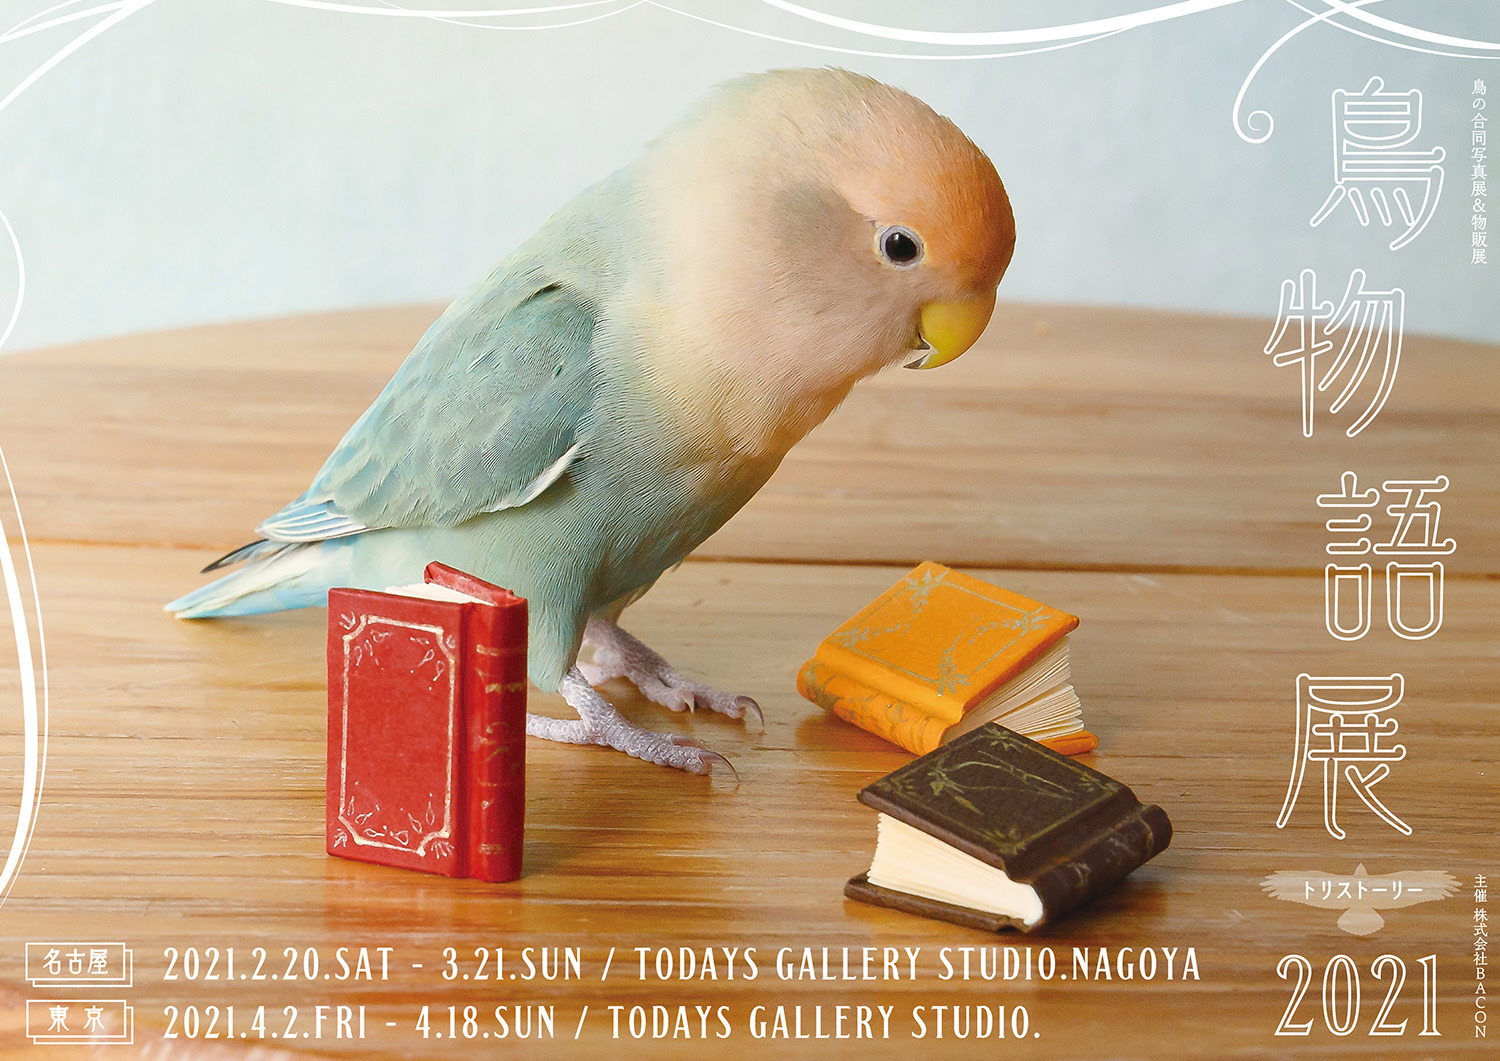 鳥物語トリストーリー展 21 名古屋 東京で開催 テーマは 一瞬の美しさ 動物のリアルを伝えるwebメディア Reanimal